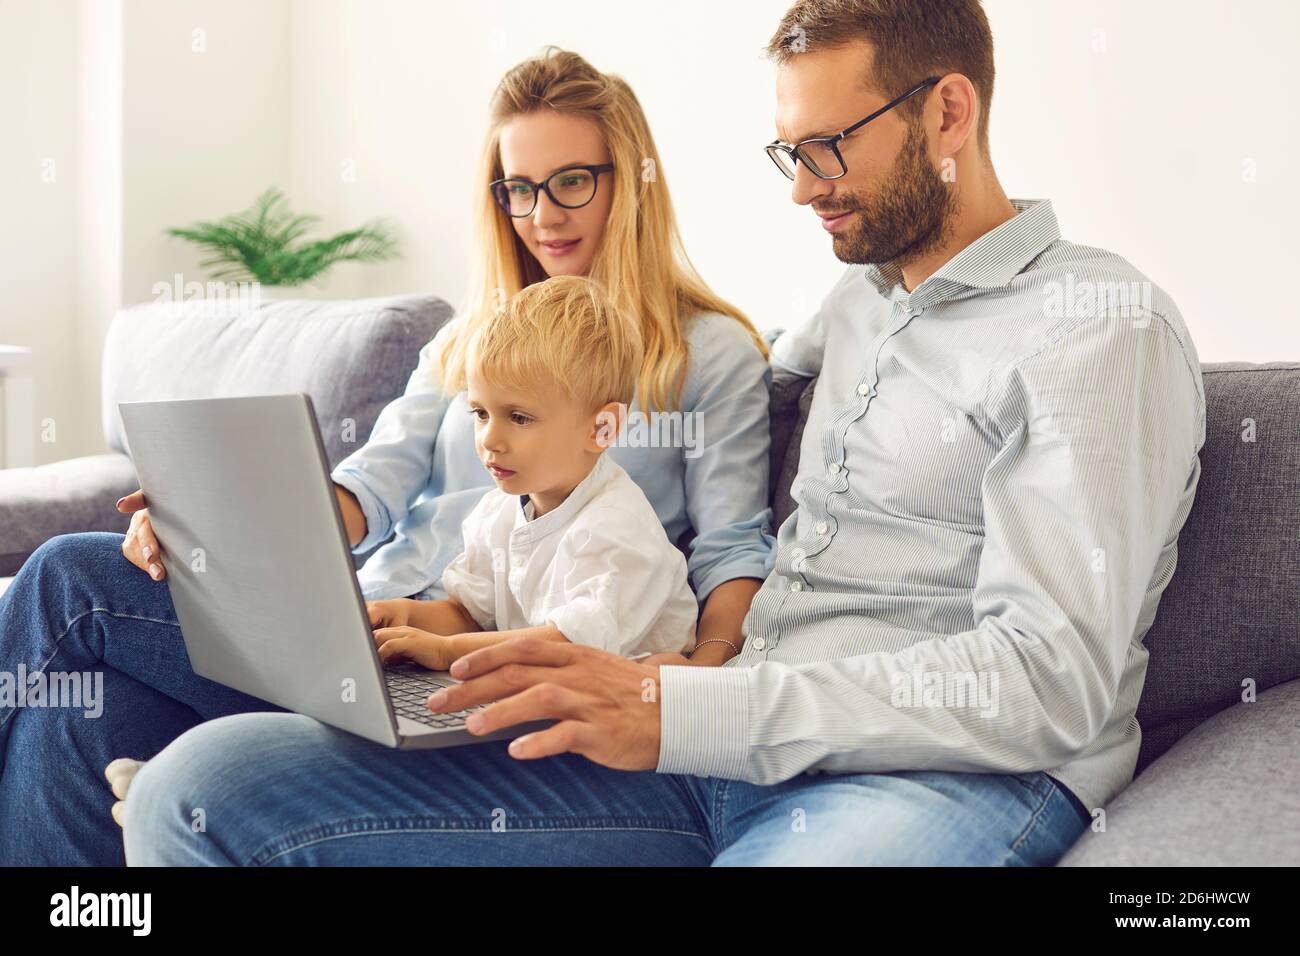 Junge Familie, die zu Hause bleiben und mit einem Laptop Videoanrufe tätigen, Filme ansehen oder online einkaufen Stockfoto